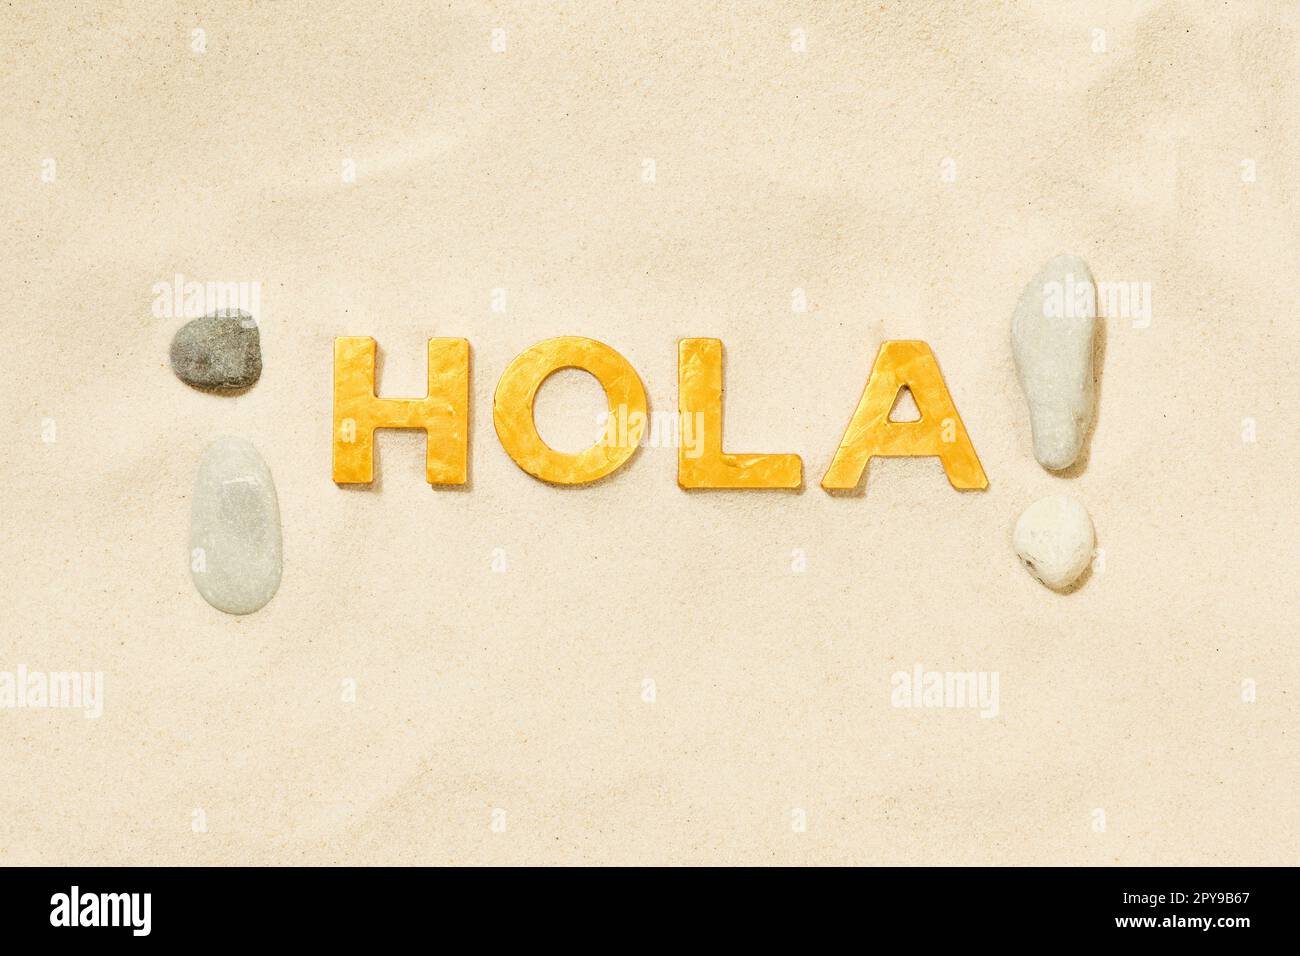 Hola! Nein! - Spanische Begrüßung mit goldenen Buchstaben im weißen Sand Stockfoto